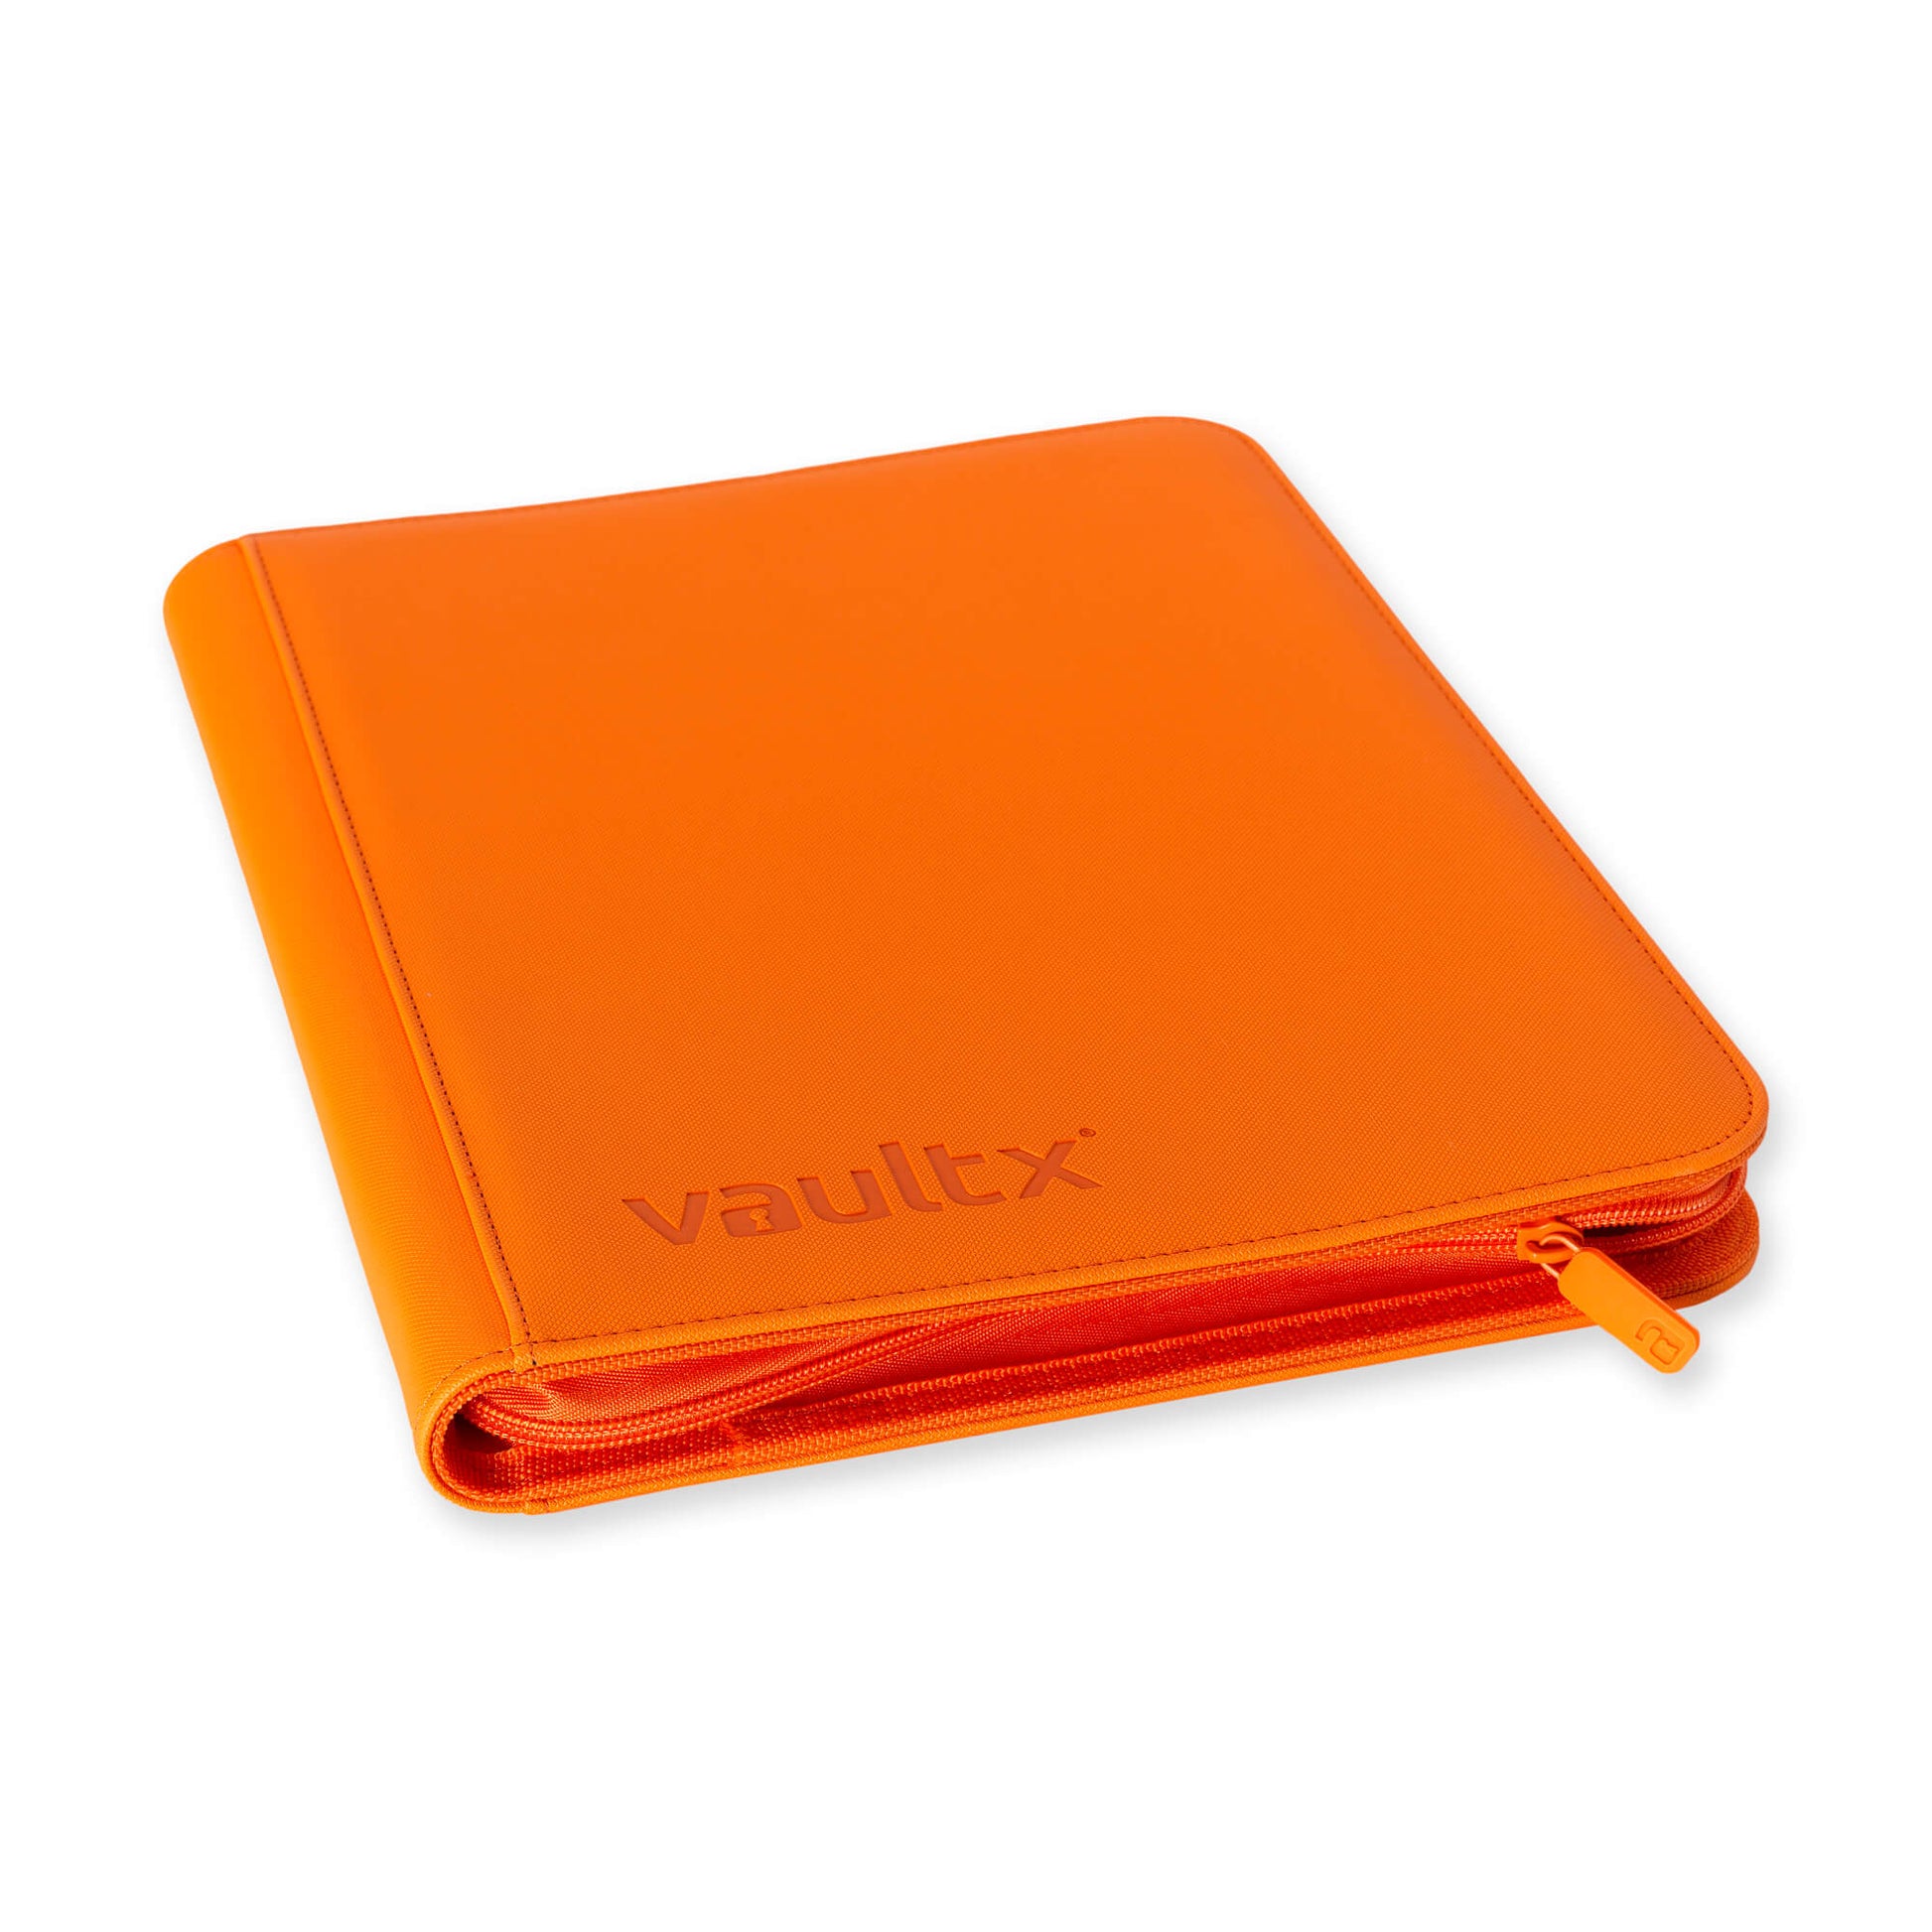 Vault X - 12-Pocket Exo-Tec® Zip Binder - Green